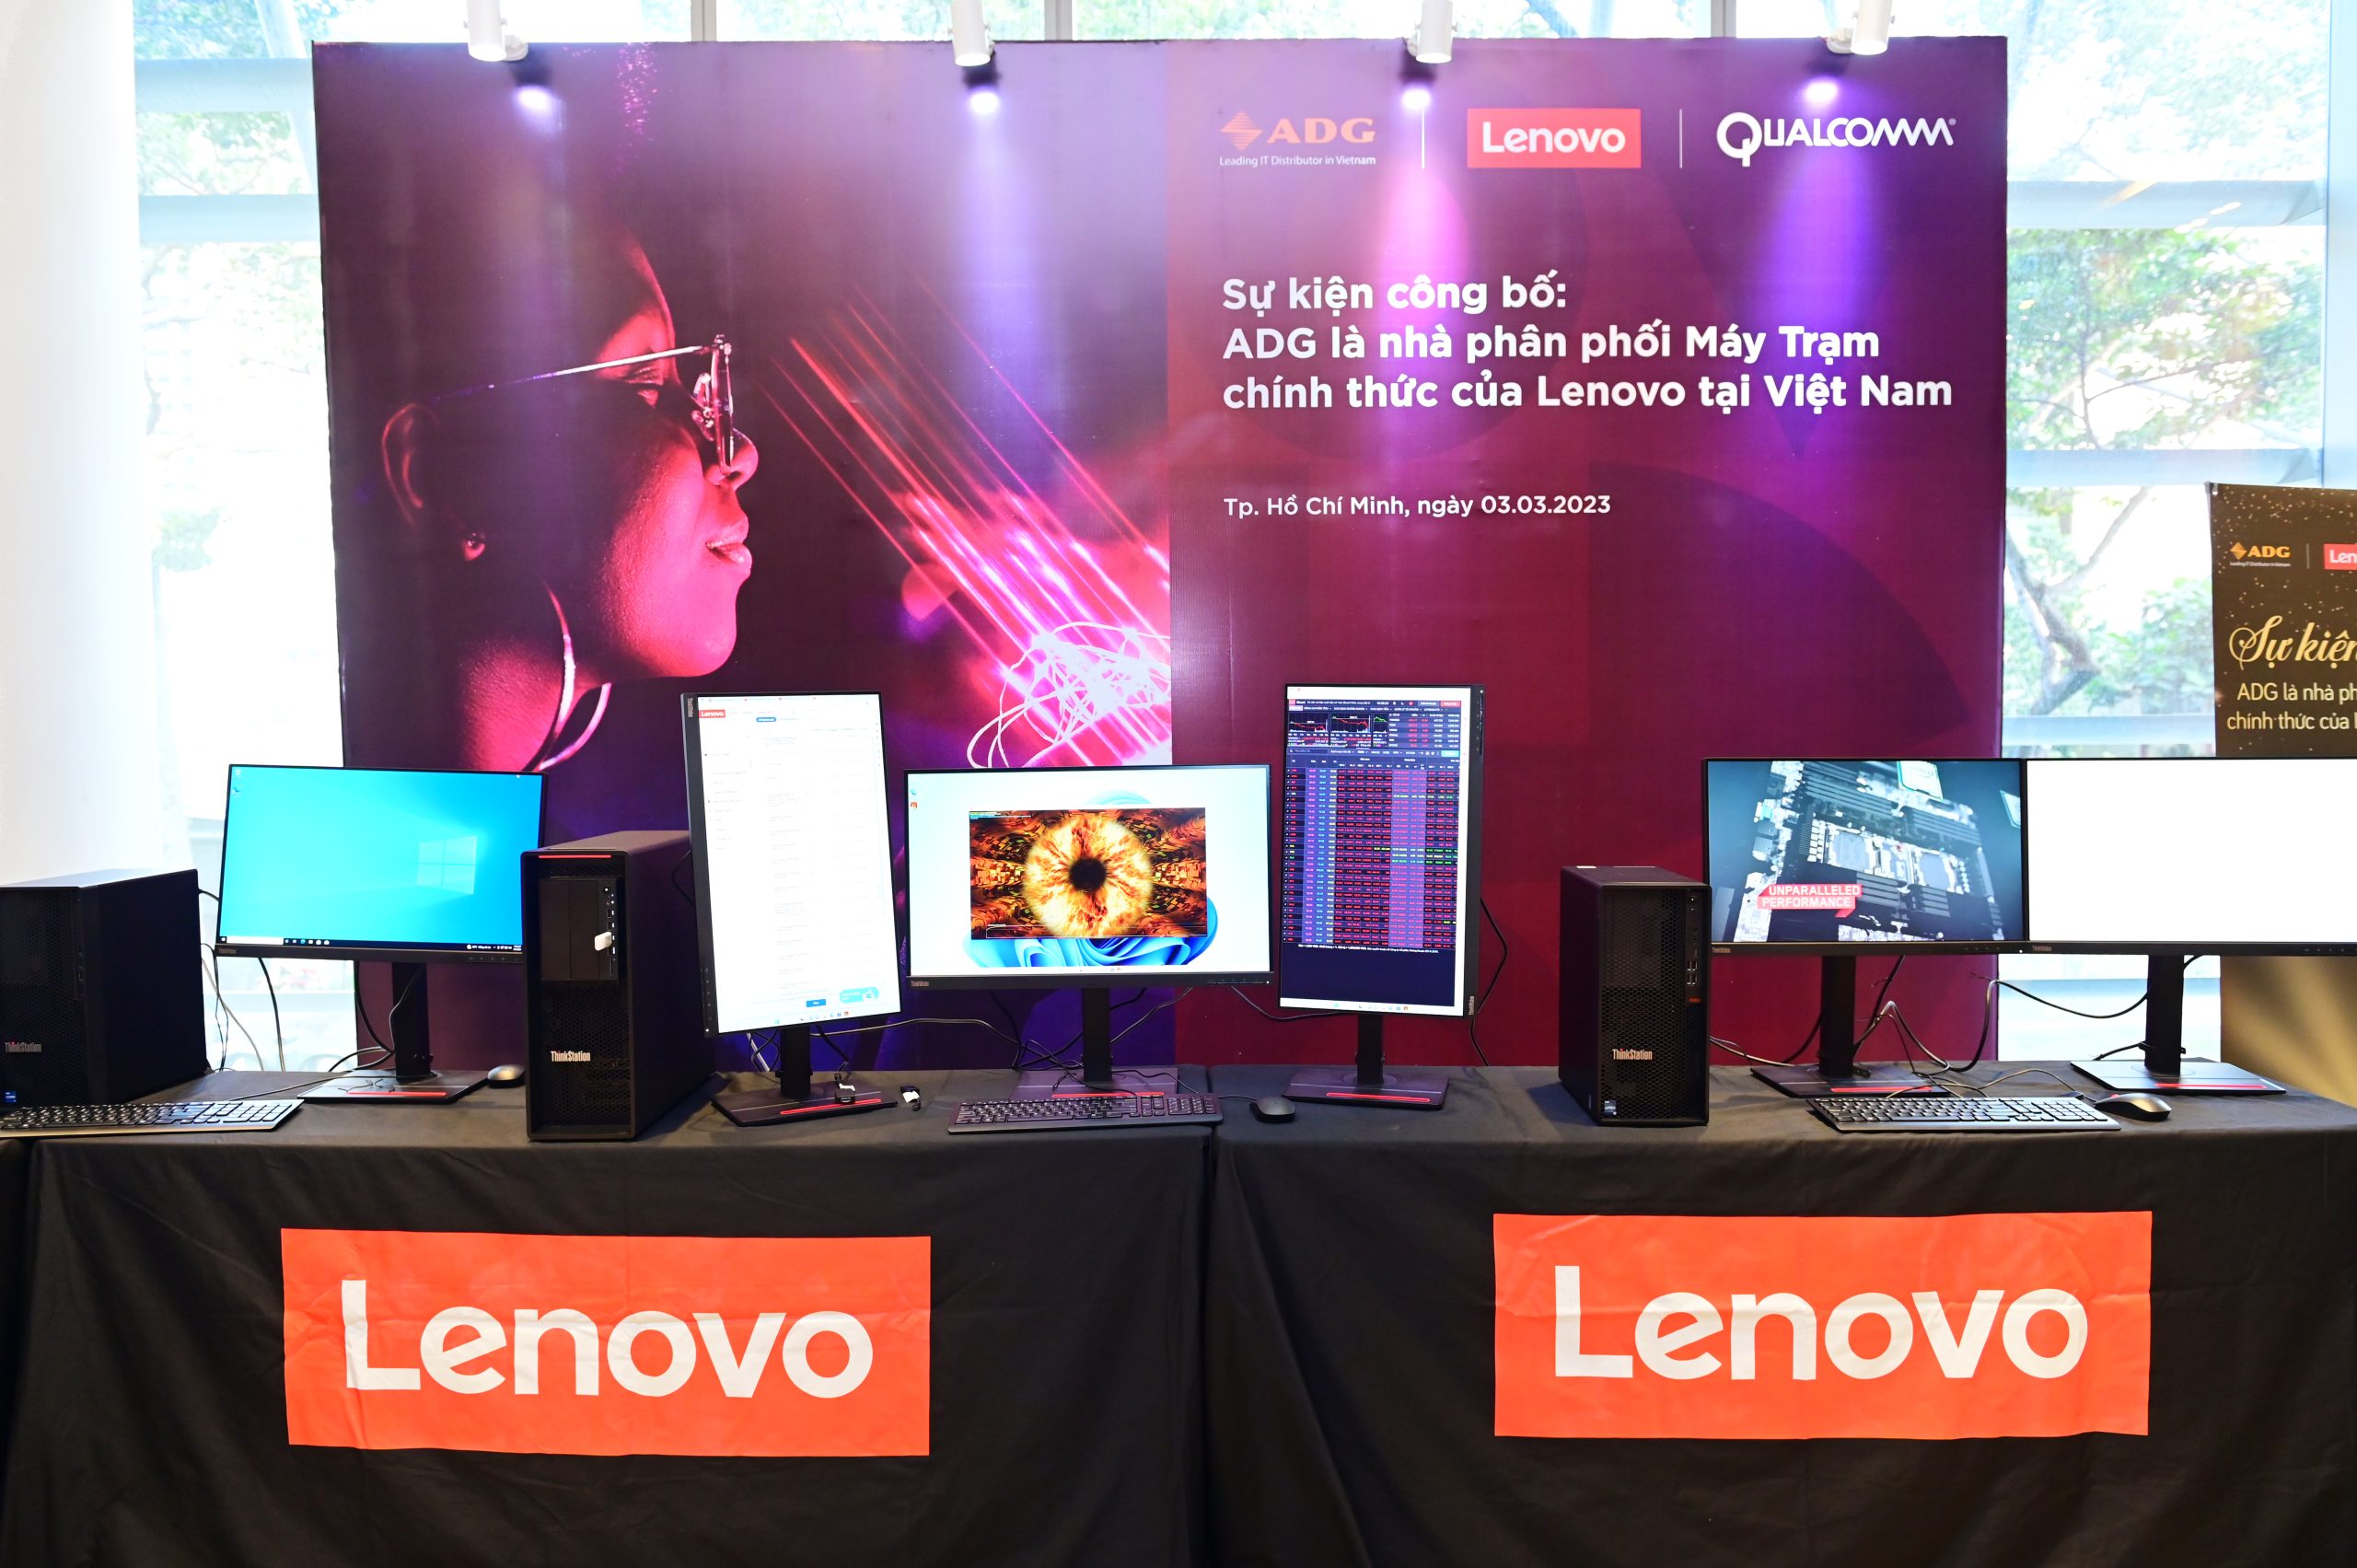 ADG phân phối workstation Lenovo chính hãng tại thị trường Việt Nam